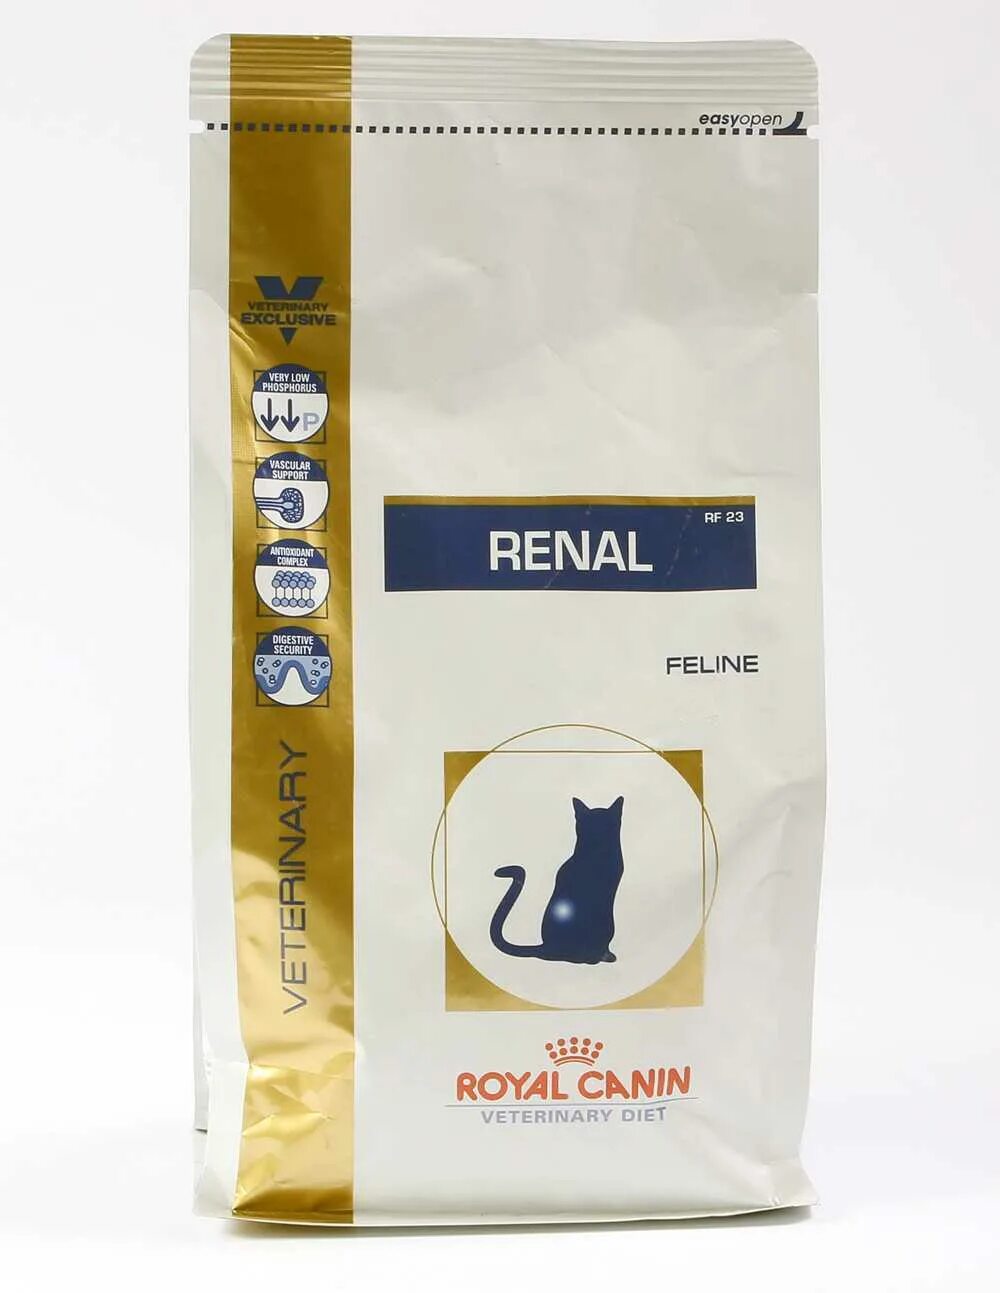 Royal canin renal для кошек купить. Роял Канин Ренал сухой. Royal Canin renal для кошек. Роял Канин Ренал для кошек линейка. Ренал Фелин для кошек Роял Канин.